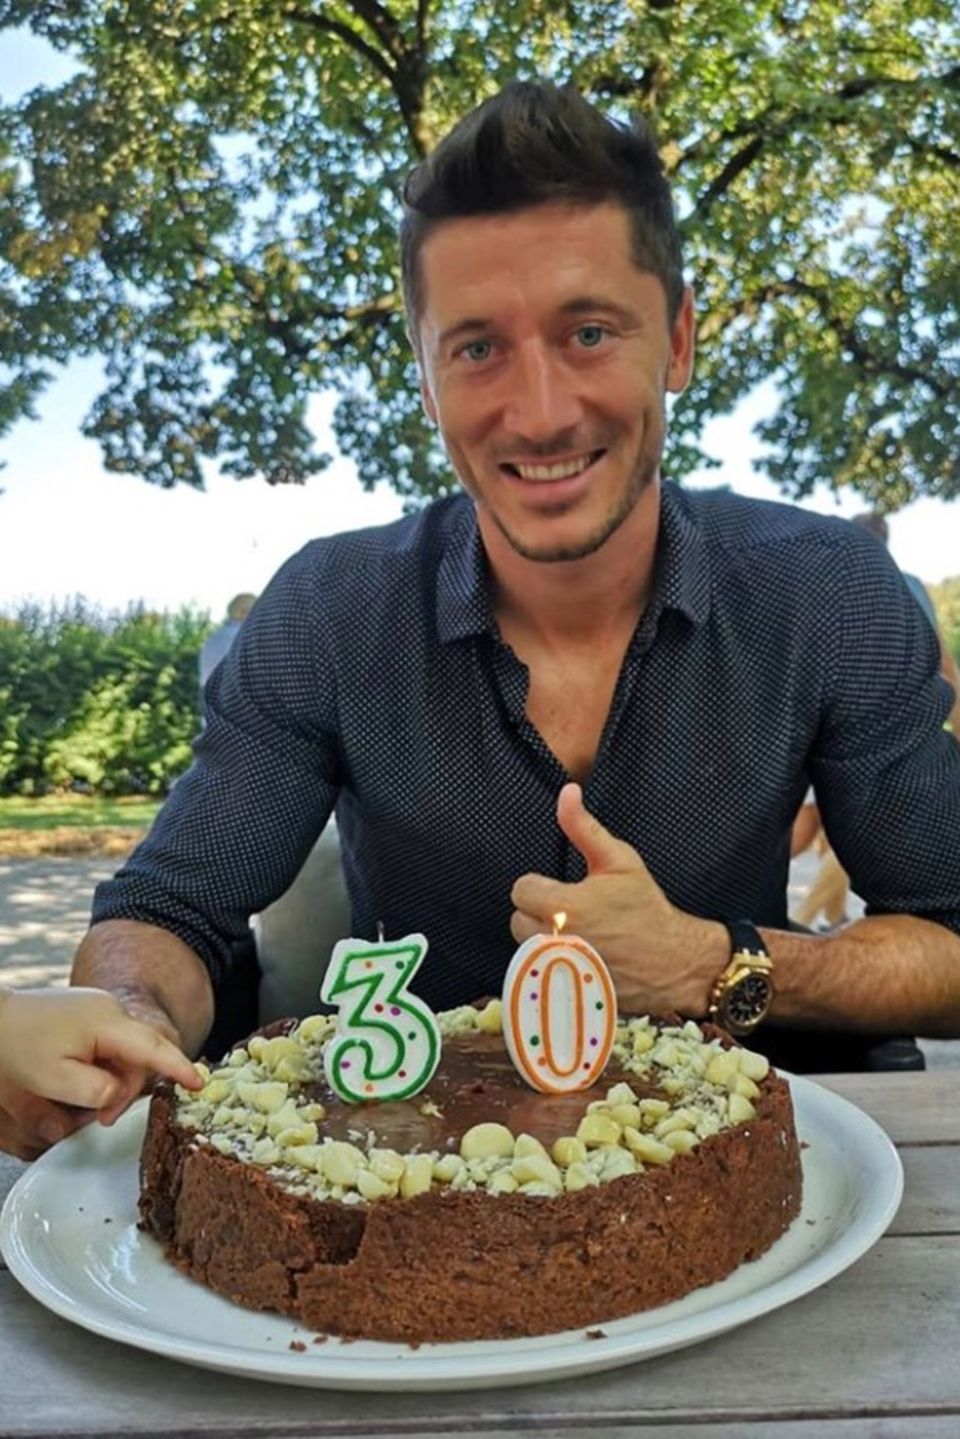 21. August 2018   Bayern Münchens Stürmer Robert Lewandowski feiert seinen 30. Geburtstag. Nicht nur der Fußballstar hat ein Auge auf die leckere Torte geworfen, seine süße Tochter (links unten) versucht ein kleines Stückchen zu stibitzen.